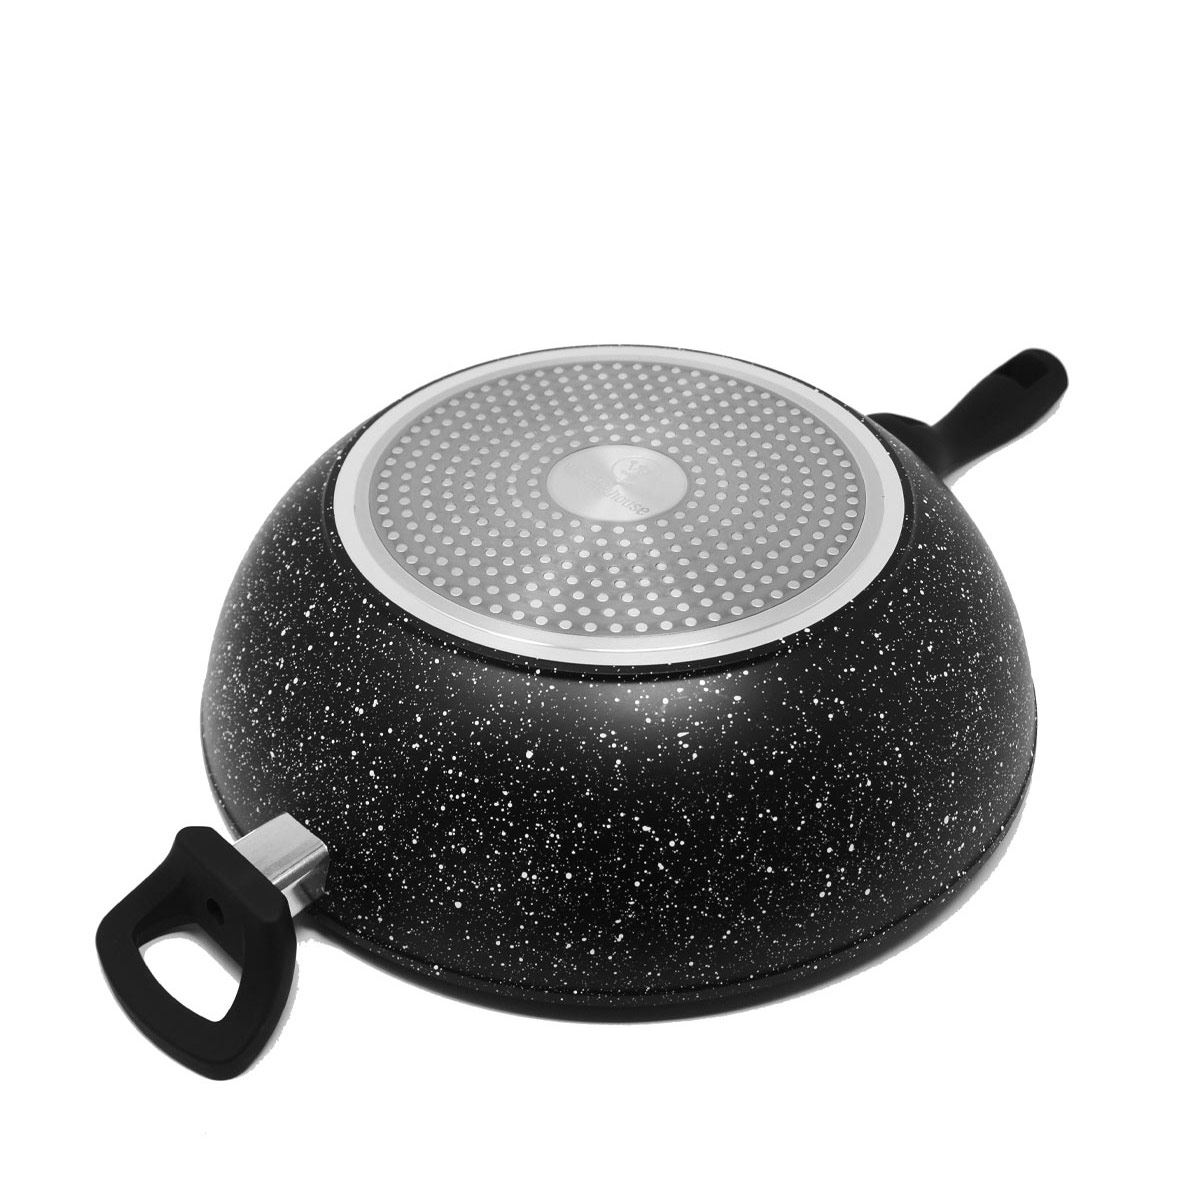 RuMah casa - Llévate el wok antiadherente de Westinghouse con 30% OFF.  Cocina fácilmente mediante una distribución rápida y uniforme del calor con  el wok de 32 cm de aluminio forjado e